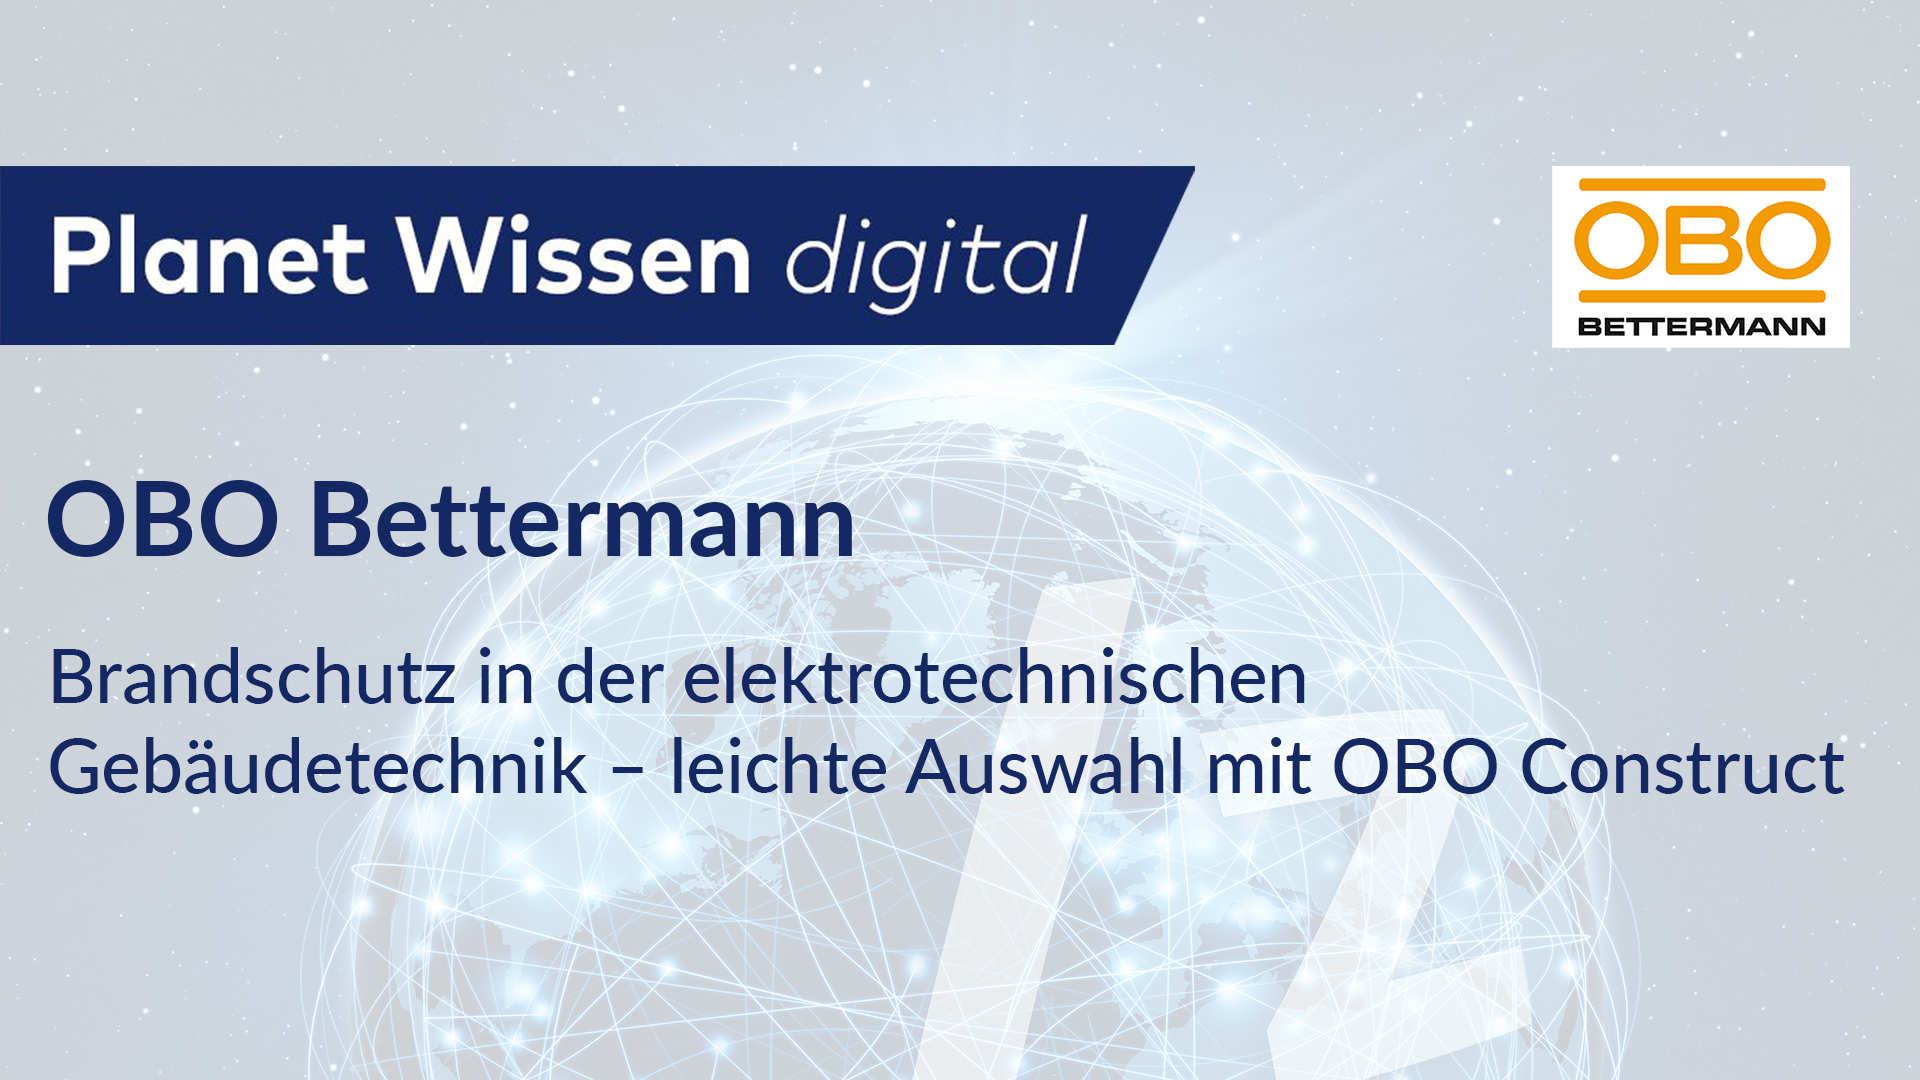 OBO Bettermann – Brandschutz in der elektrotechnischen Gebäudetechnik – leichte Auswahl mit OBO Construct